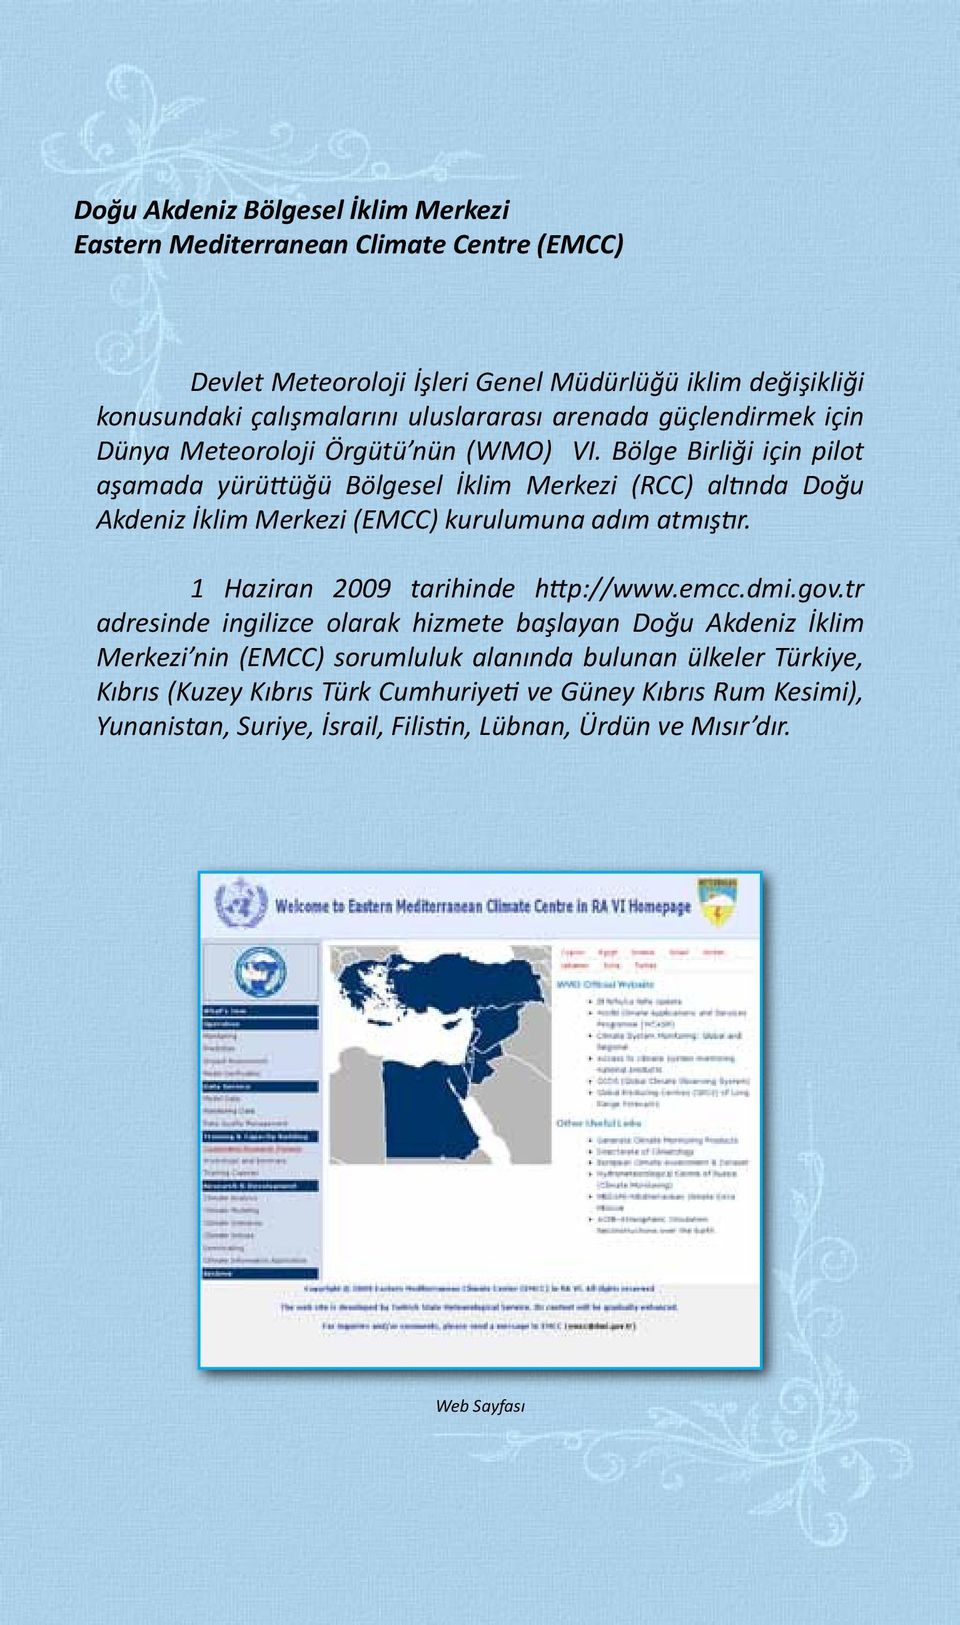 Bölge Birliği için pilot aşamada yürüttüğü Bölgesel İklim Merkezi (RCC) altında Doğu Akdeniz İklim Merkezi (EMCC) kurulumuna adım atmıştır. 1 Haziran 2009 tarihinde http://www.